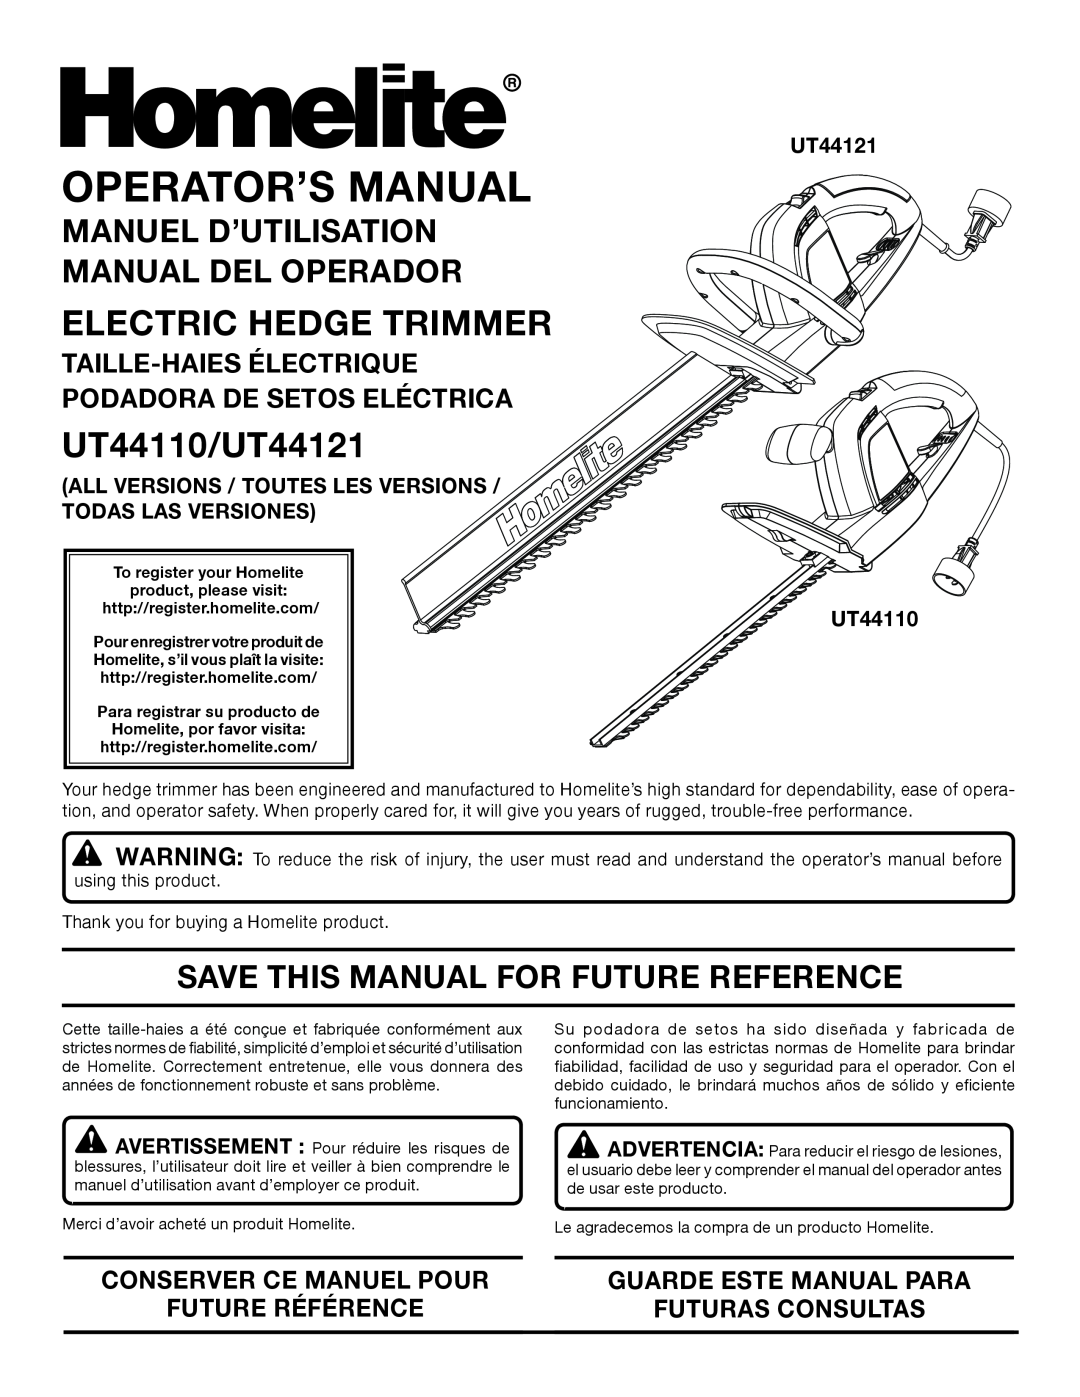 Homelite UT44121 manuel dutilisation Manuel D’Utilisation Manual Del Operador, Save This Manual For Future Reference 